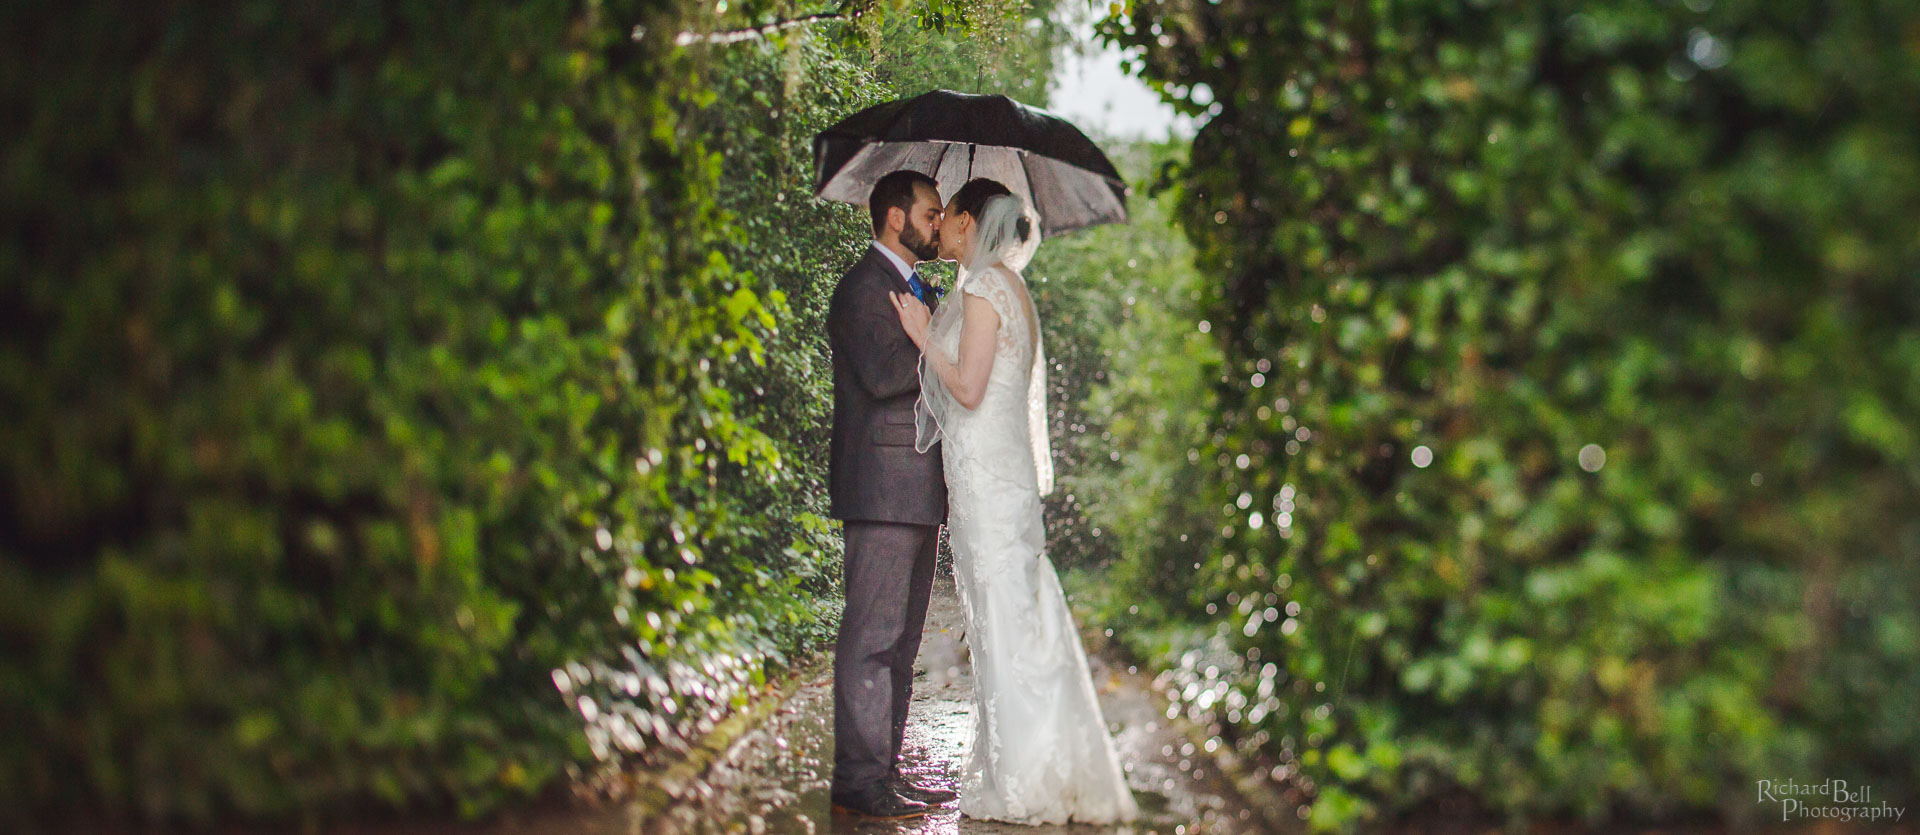 Bride and Groom under umbrella